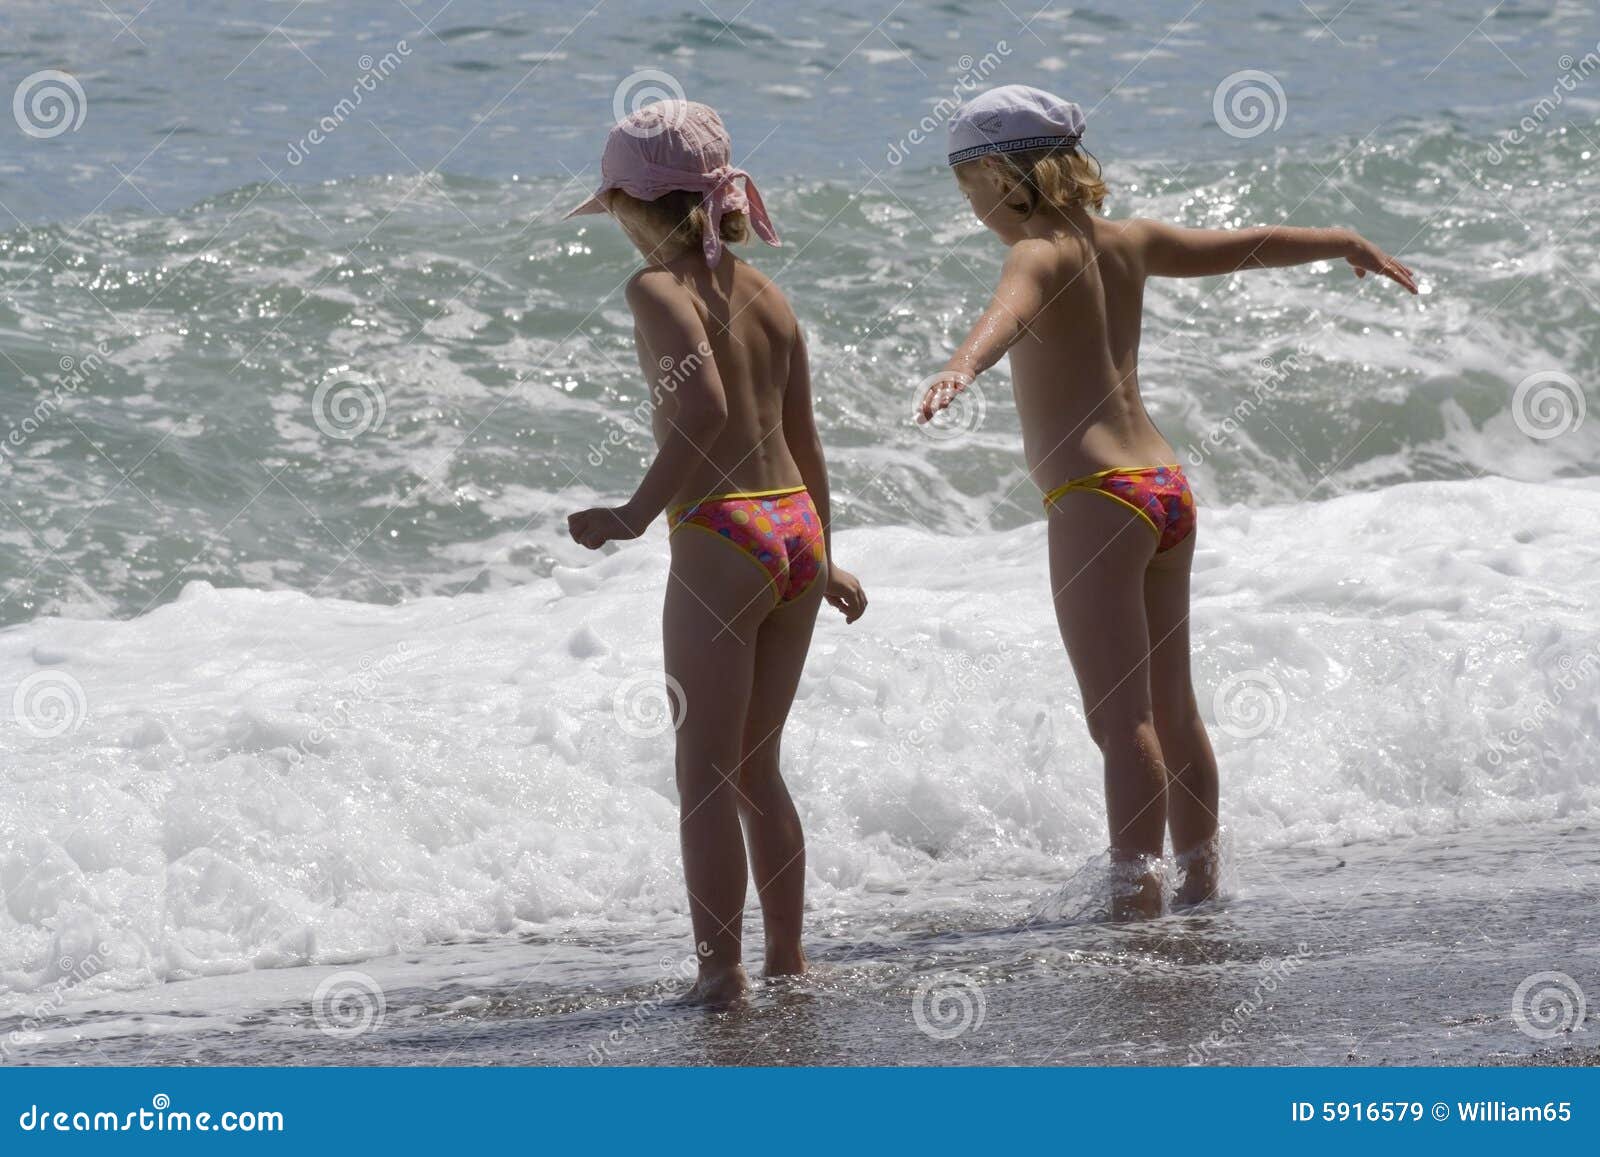 нудистский пляж с голыми детьми фото 7